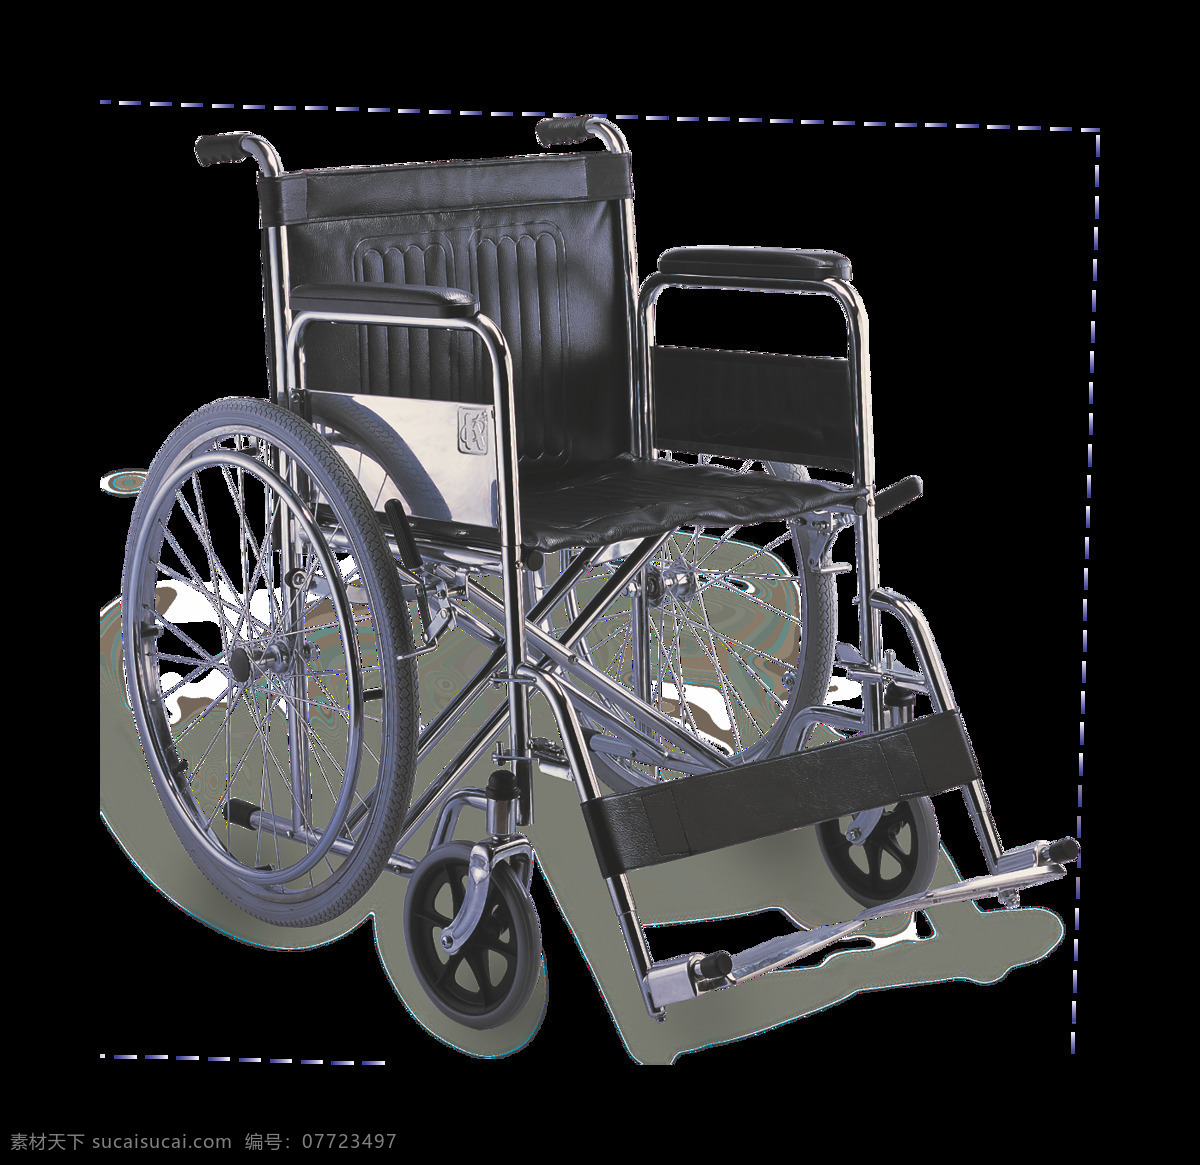 智能 轮椅 免 抠 透明 图 层 木轮椅 越野轮椅 小轮轮椅 手摇轮椅 轮椅轮子 车载轮椅 老年轮椅 竞速轮椅 轮椅设计 残疾轮椅 折叠轮椅 智能轮椅 医院轮椅 轮椅图片